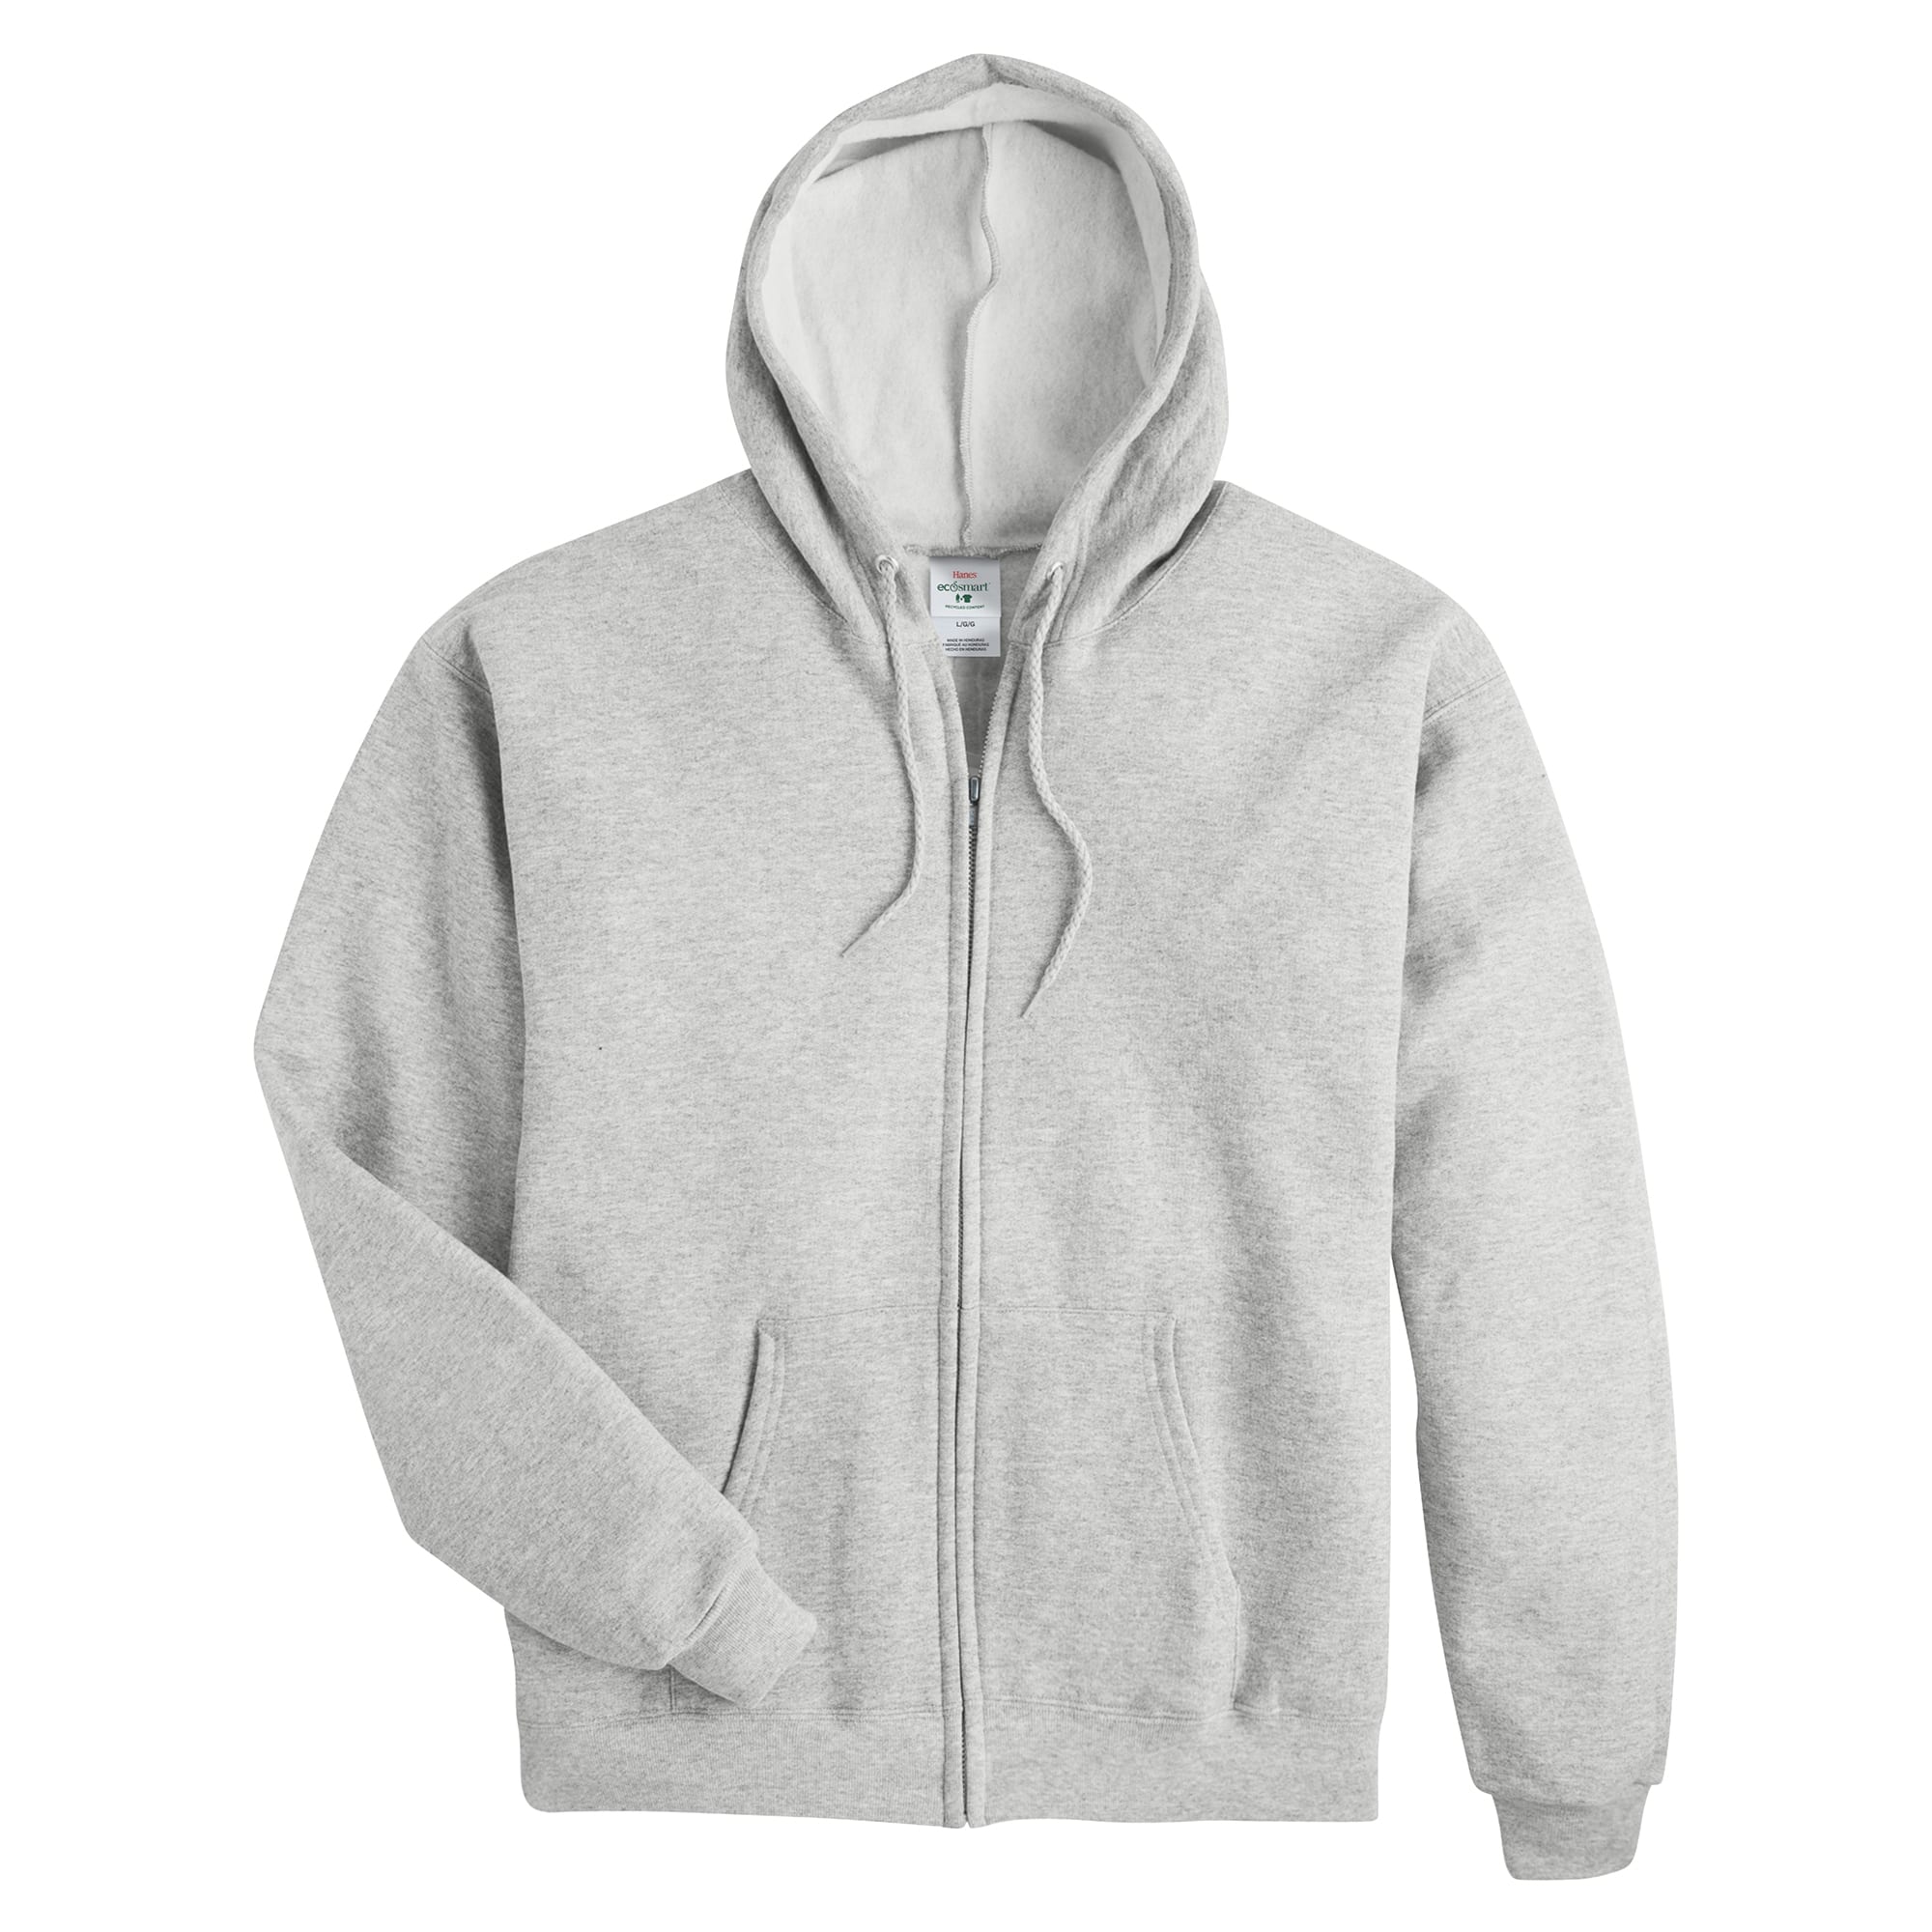 Hanes Mens Ecosmart Full-Zip Hooded Sweatshirt